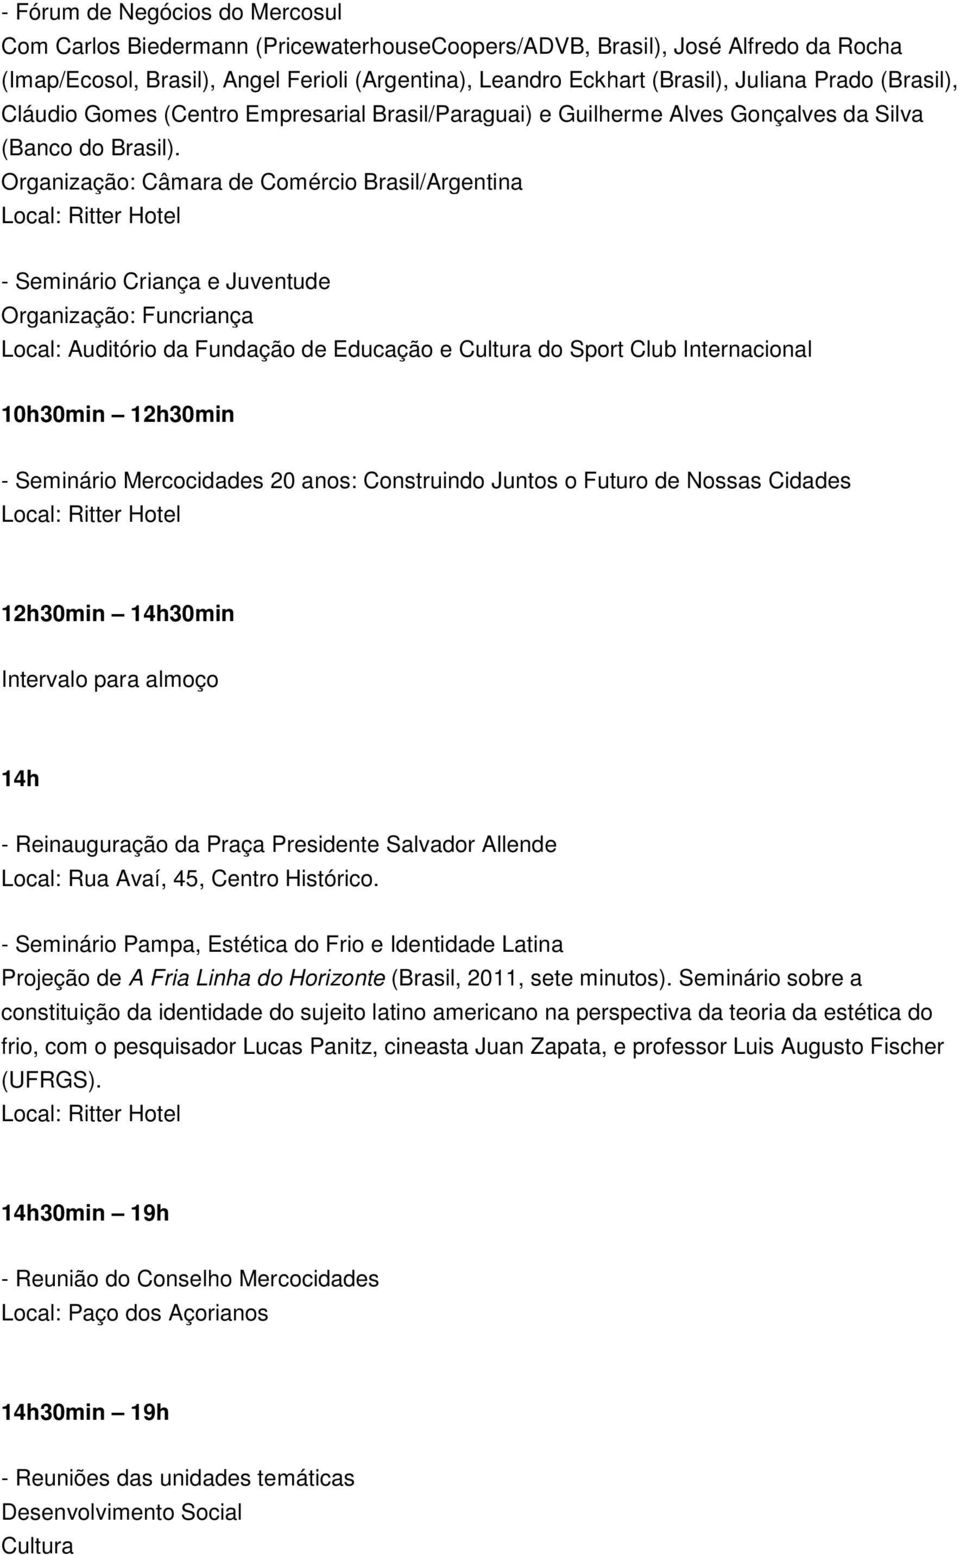 Organização: Câmara de Comércio Brasil/Argentina - Seminário Criança e Juventude Organização: Funcriança Local: Auditório da Fundação de Educação e Cultura do Sport Club Internacional 10h30min